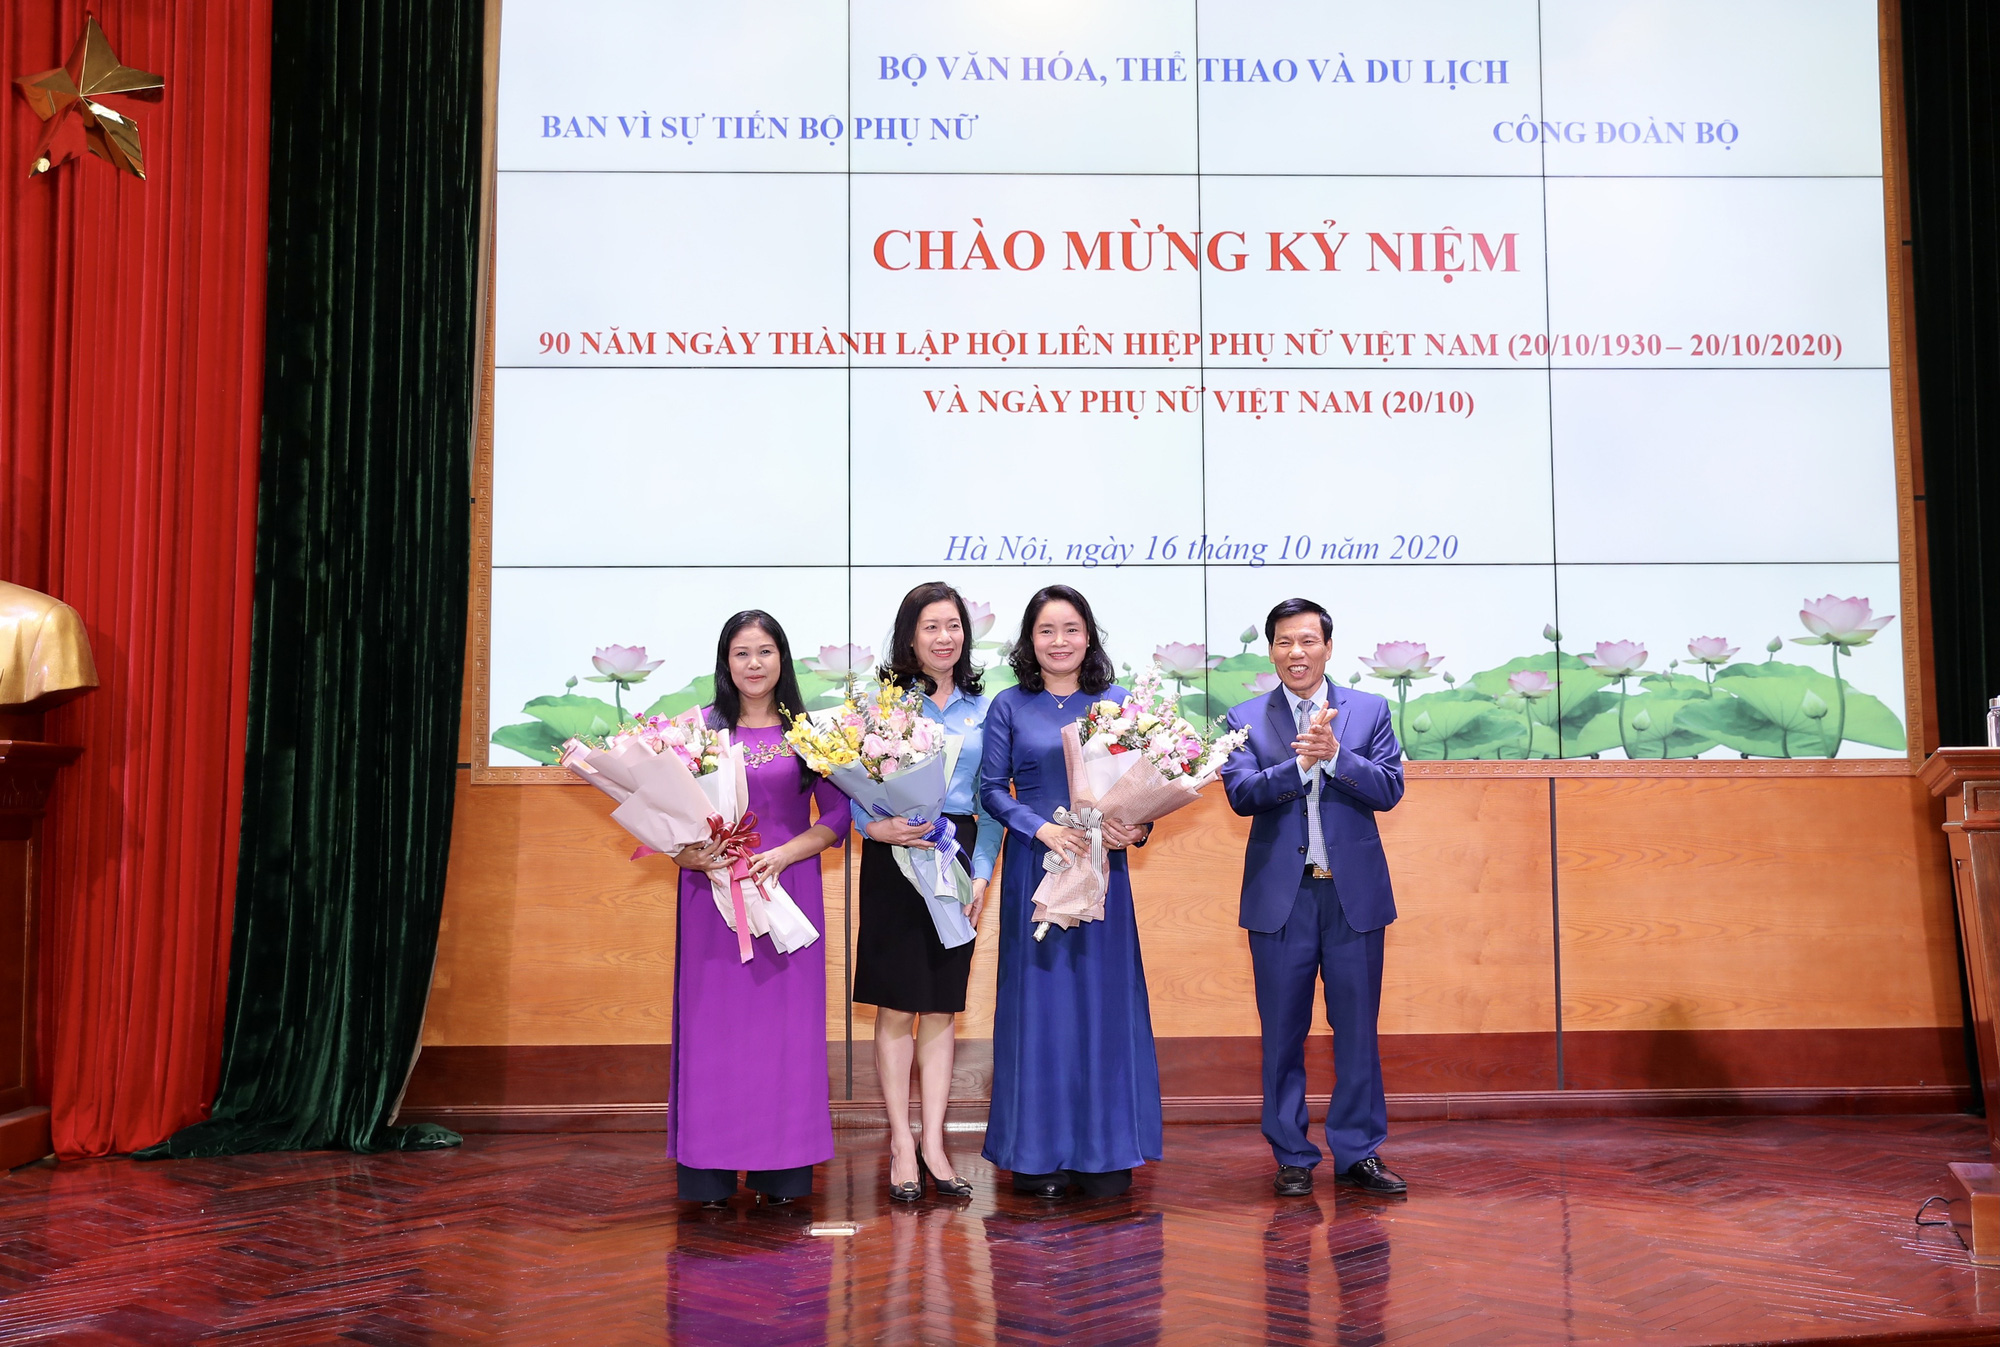 Bộ trưởng Nguyễn Ngọc Thiện: Cán bộ, công chức, viên chức, người lao động nữ đã có đóng góp lớn vào thành tích chung của Bộ VHTTDL